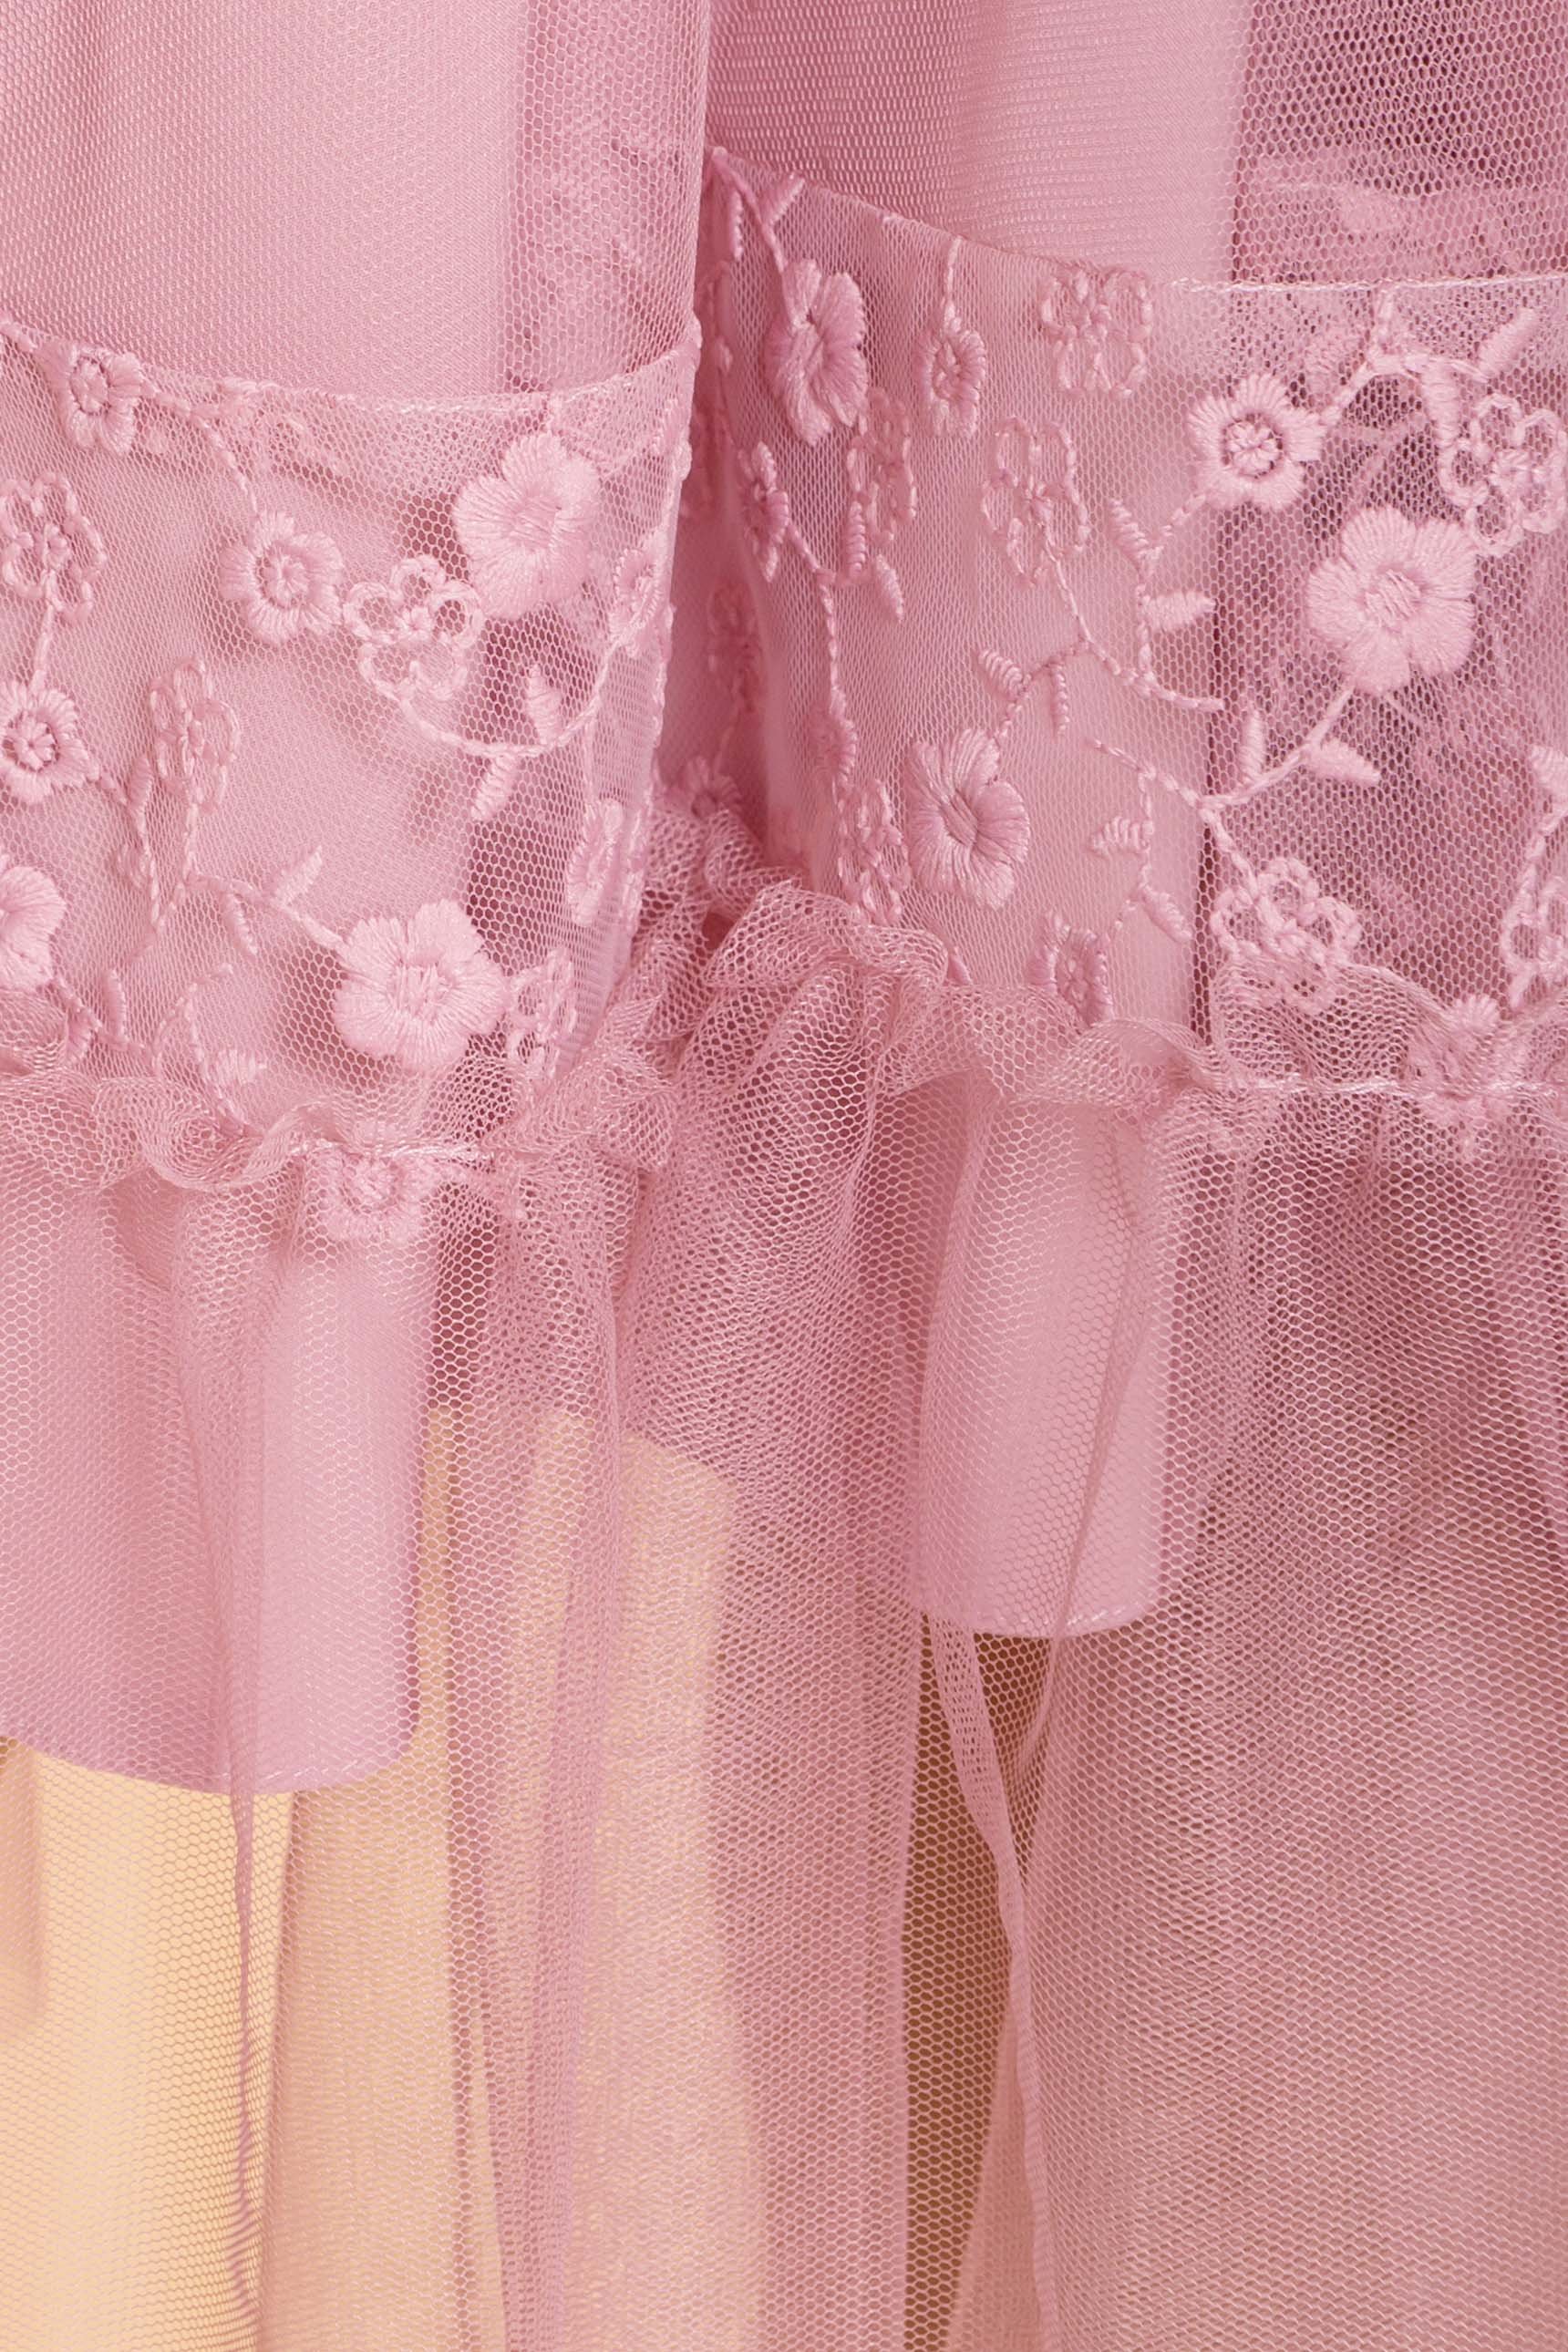 Платье Риана 6701 АРТ. 41936 Цвет: Серо-розовый/серо-роз/сер-роз - фото 4, интернет магазин tm-modus.ru